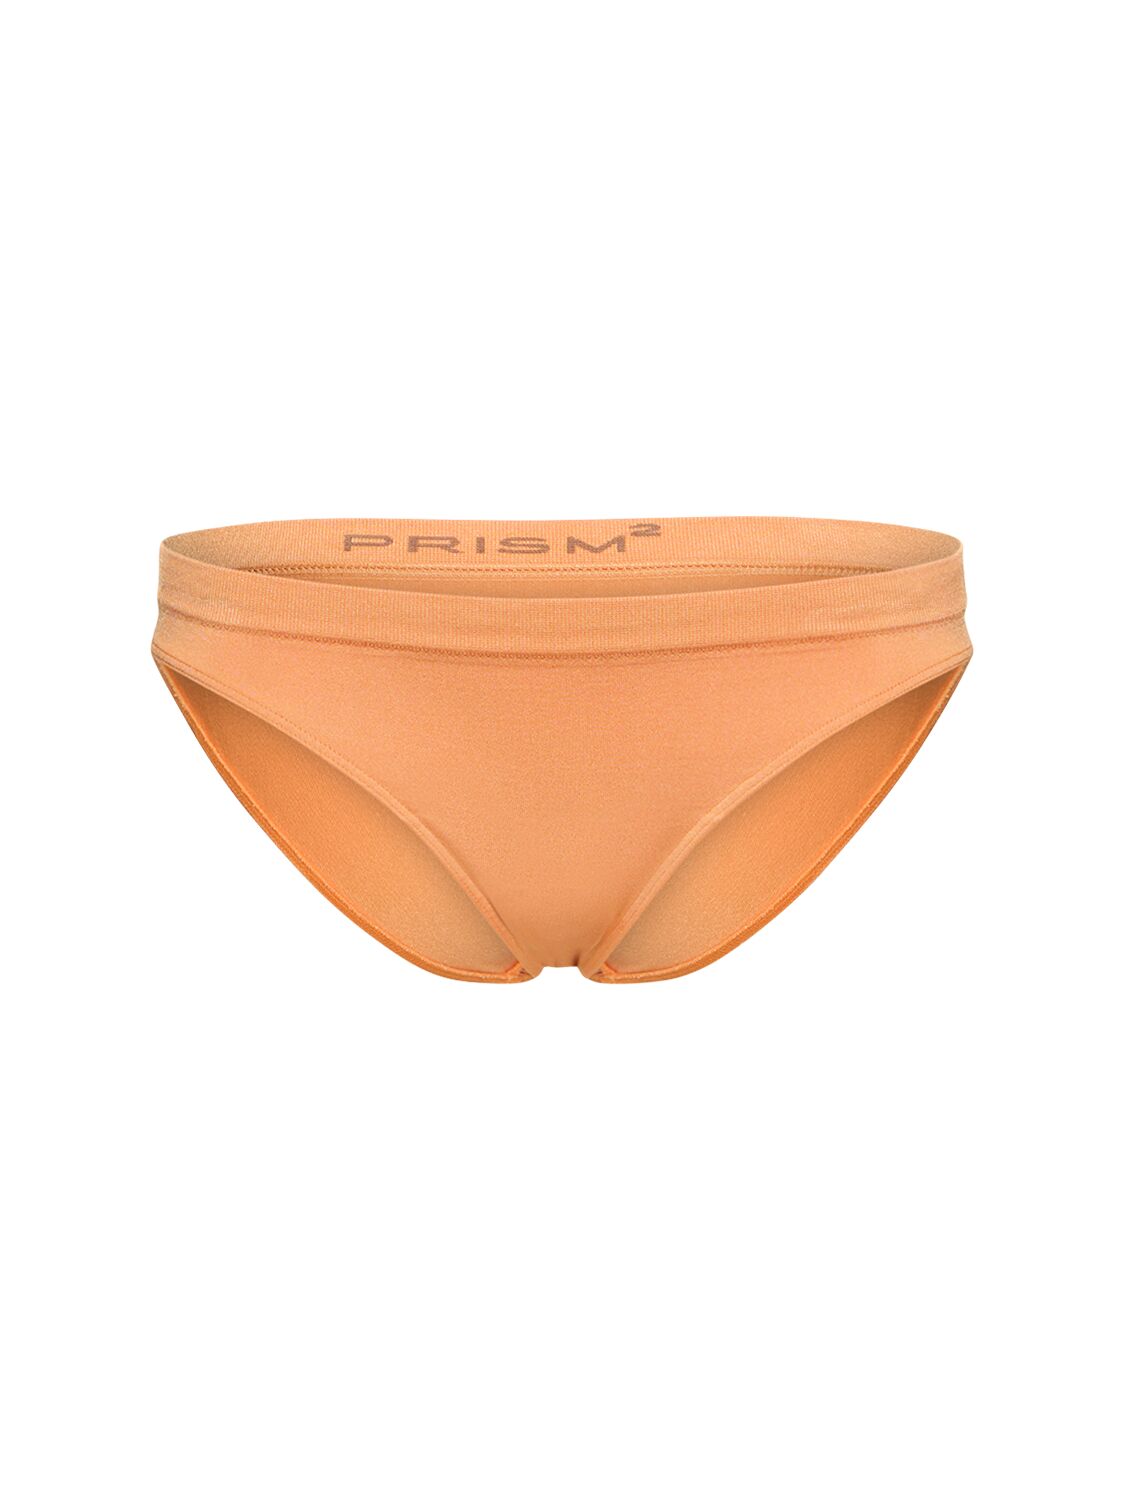 Prism Squared Dynamic Bikini Bottoms In Orange